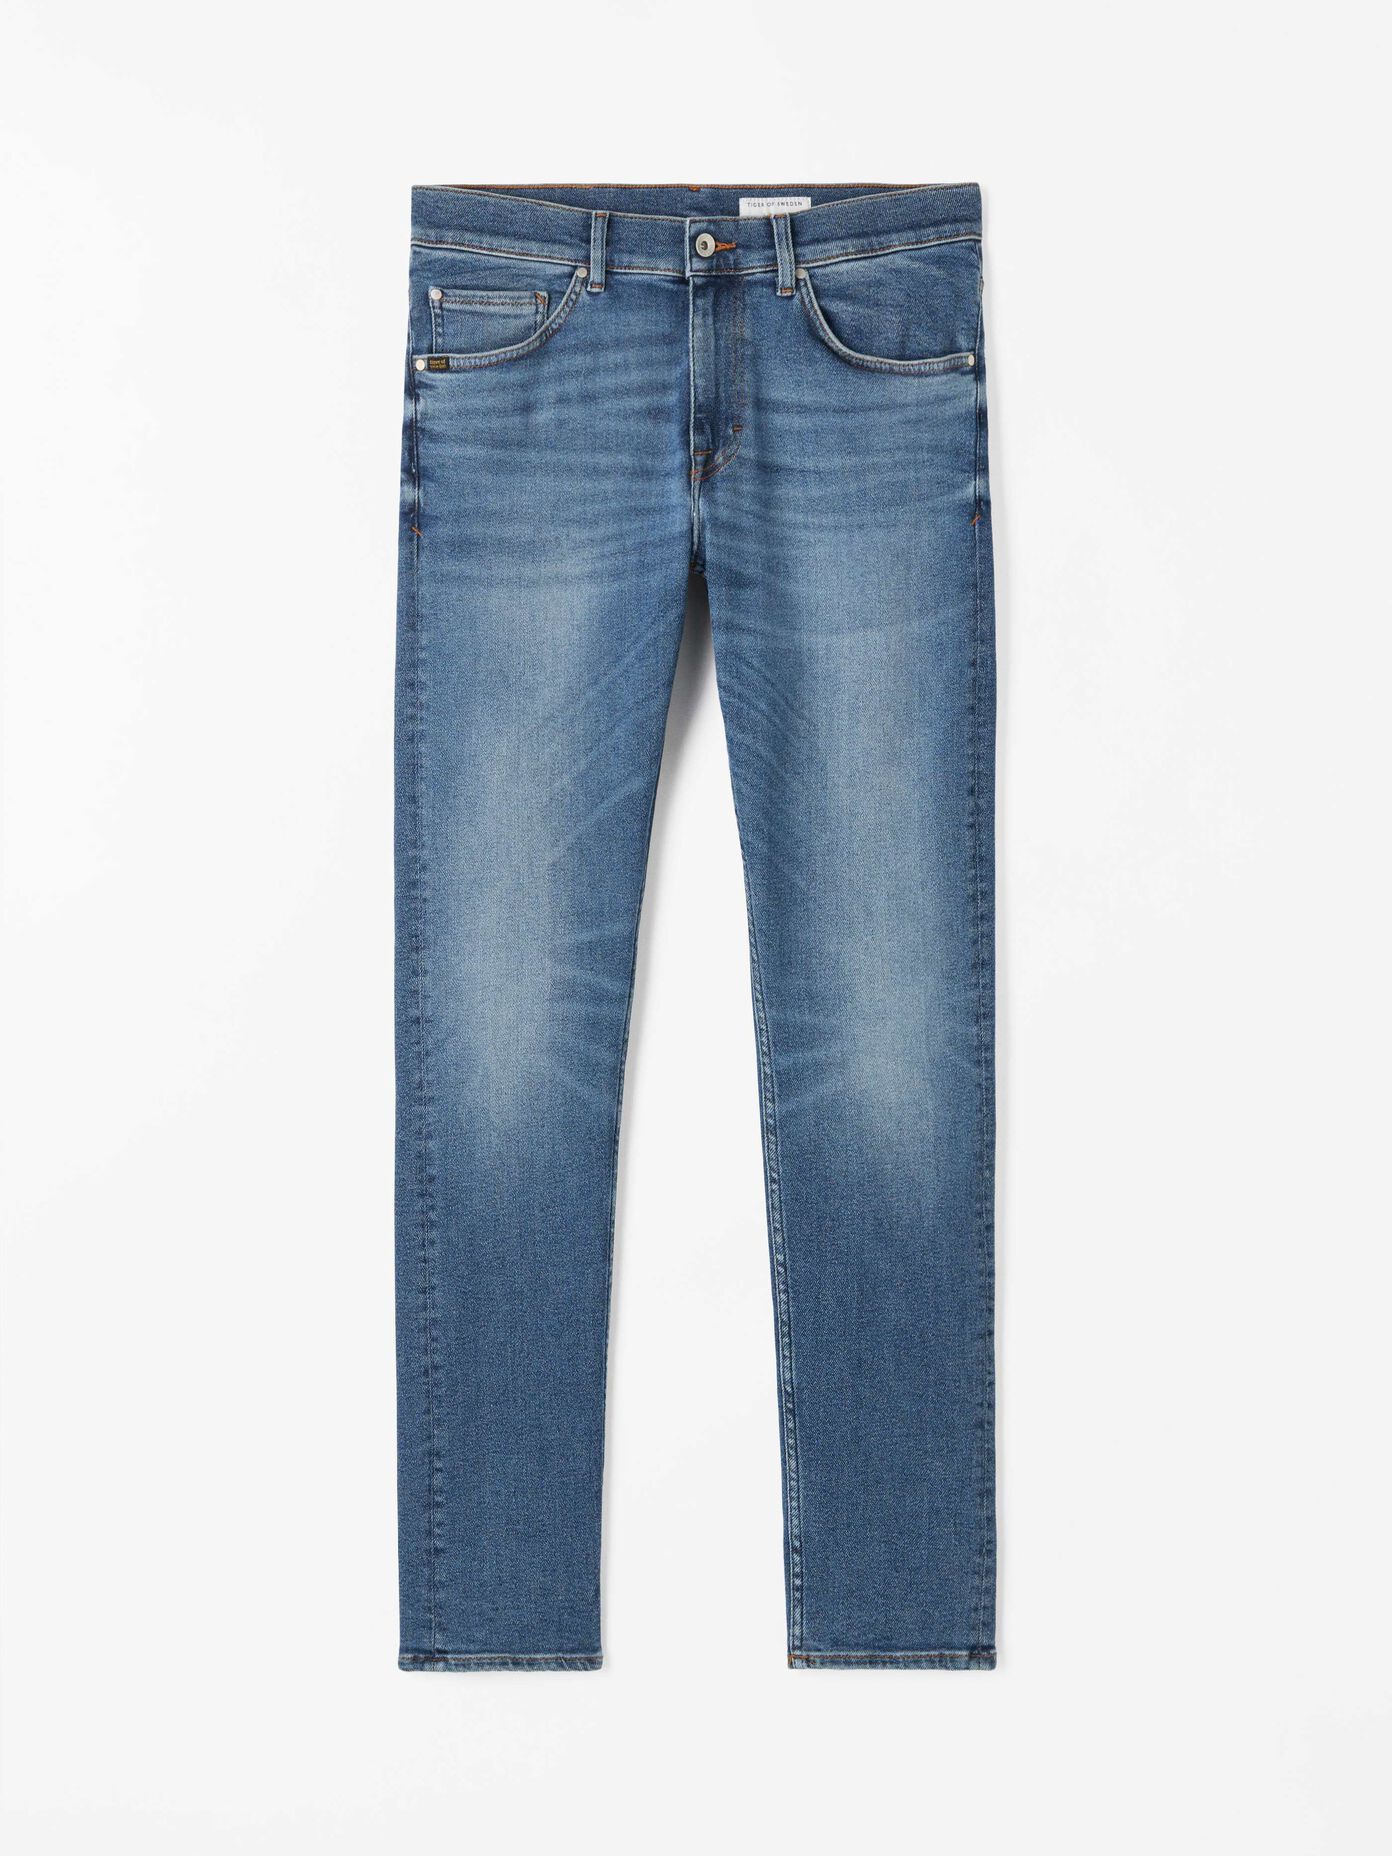 Men’s jeans. Slim fit & stretch jeans | Tiger of Sweden